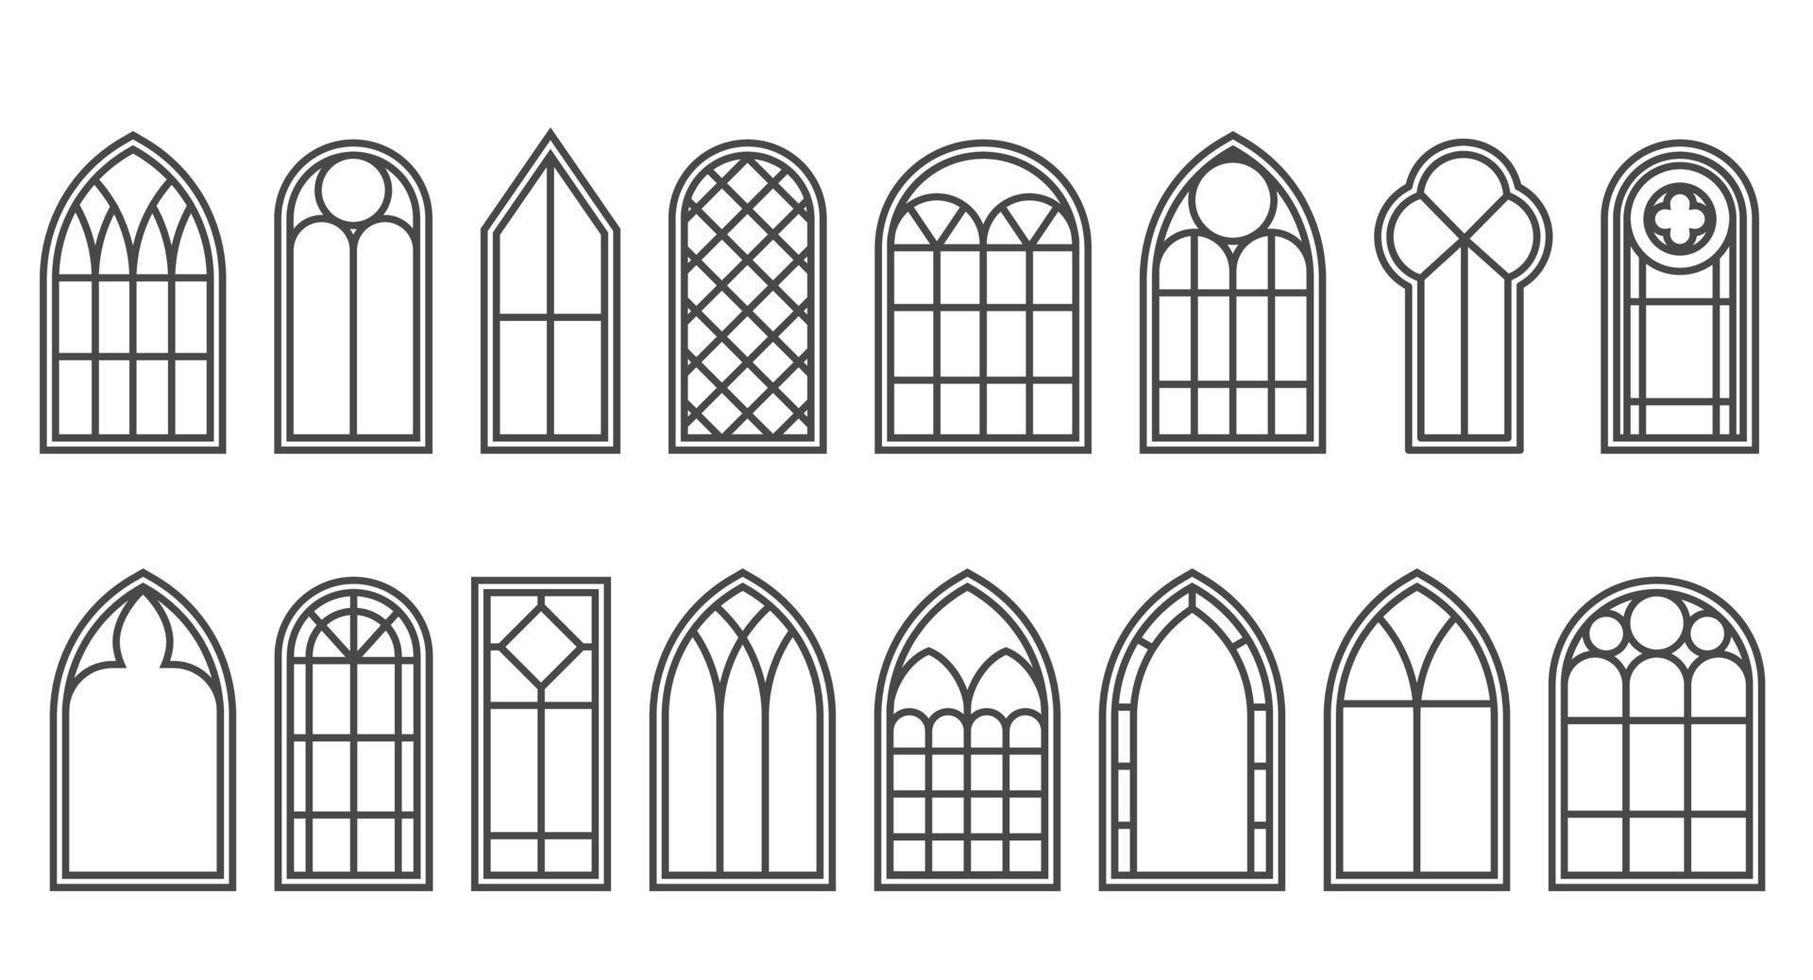 gotisch ramen schets set. silhouet van wijnoogst gebrandschilderd glas kerk kozijnen. element van traditioneel Europese architectuur. vector schets illustratie